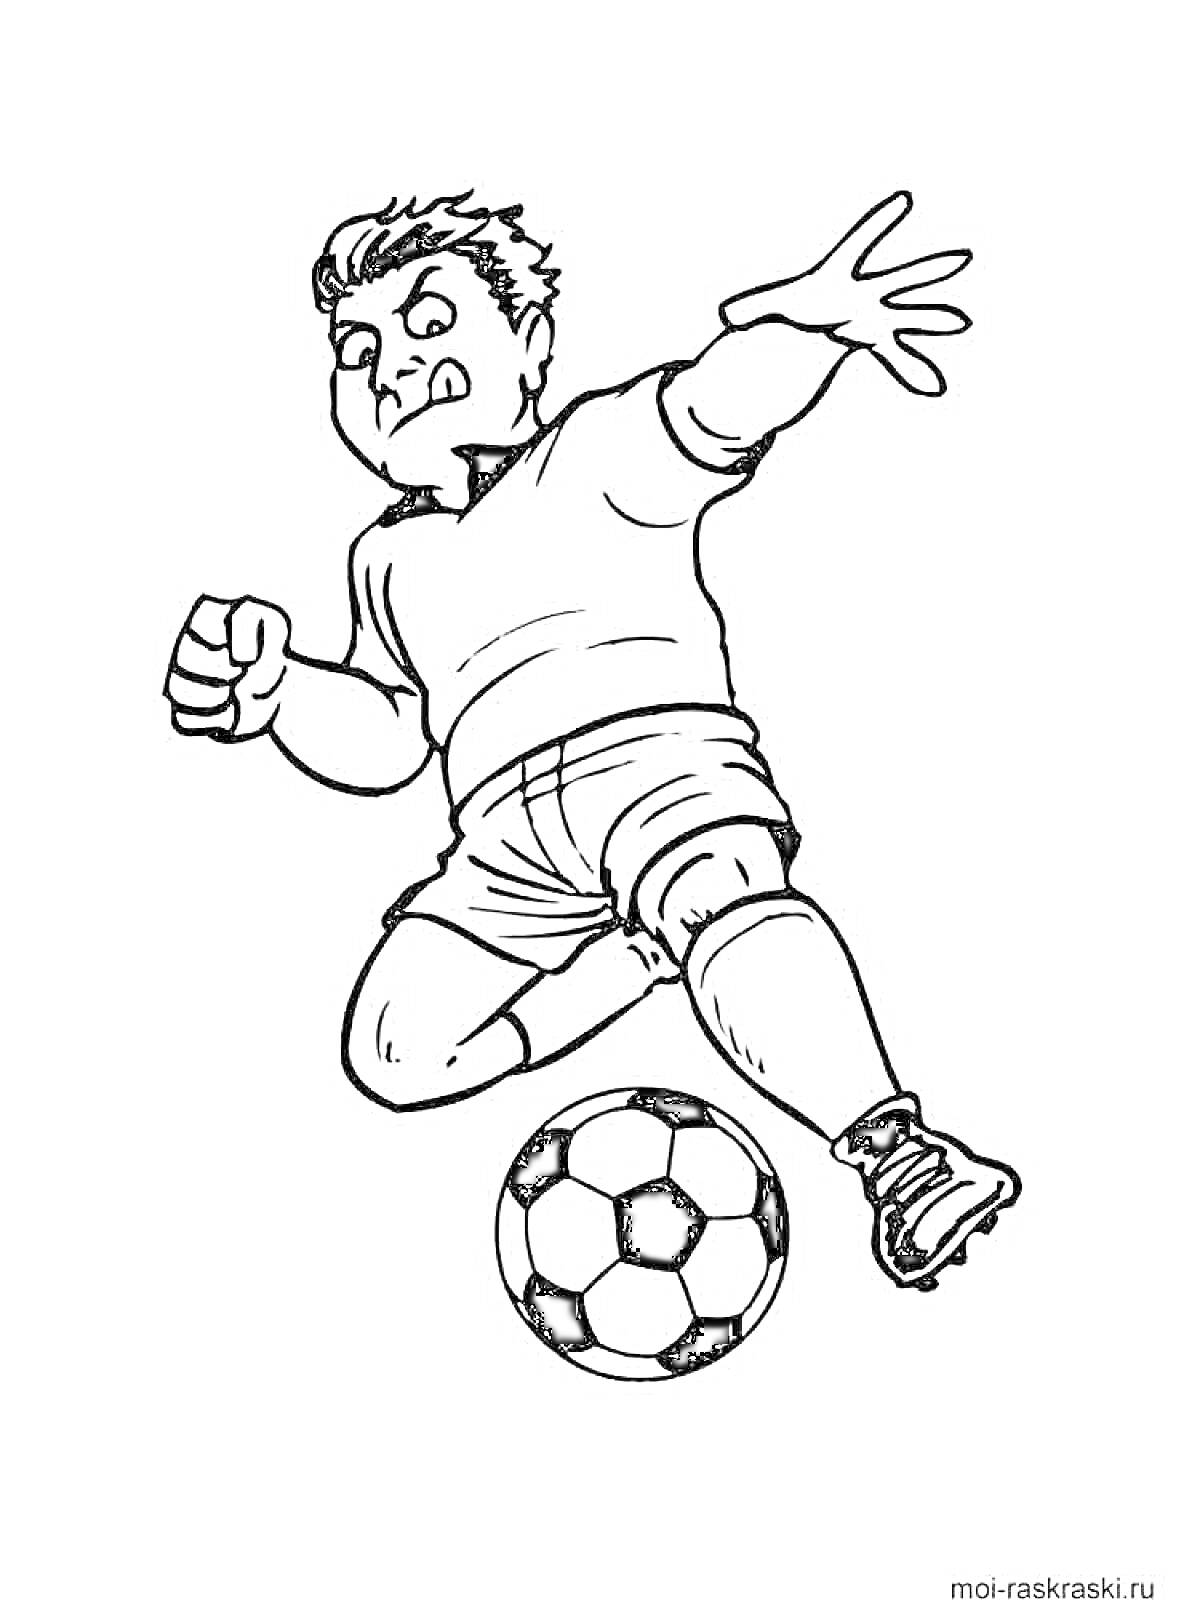 Раскраска Футболист, играющий в футбол с мячом